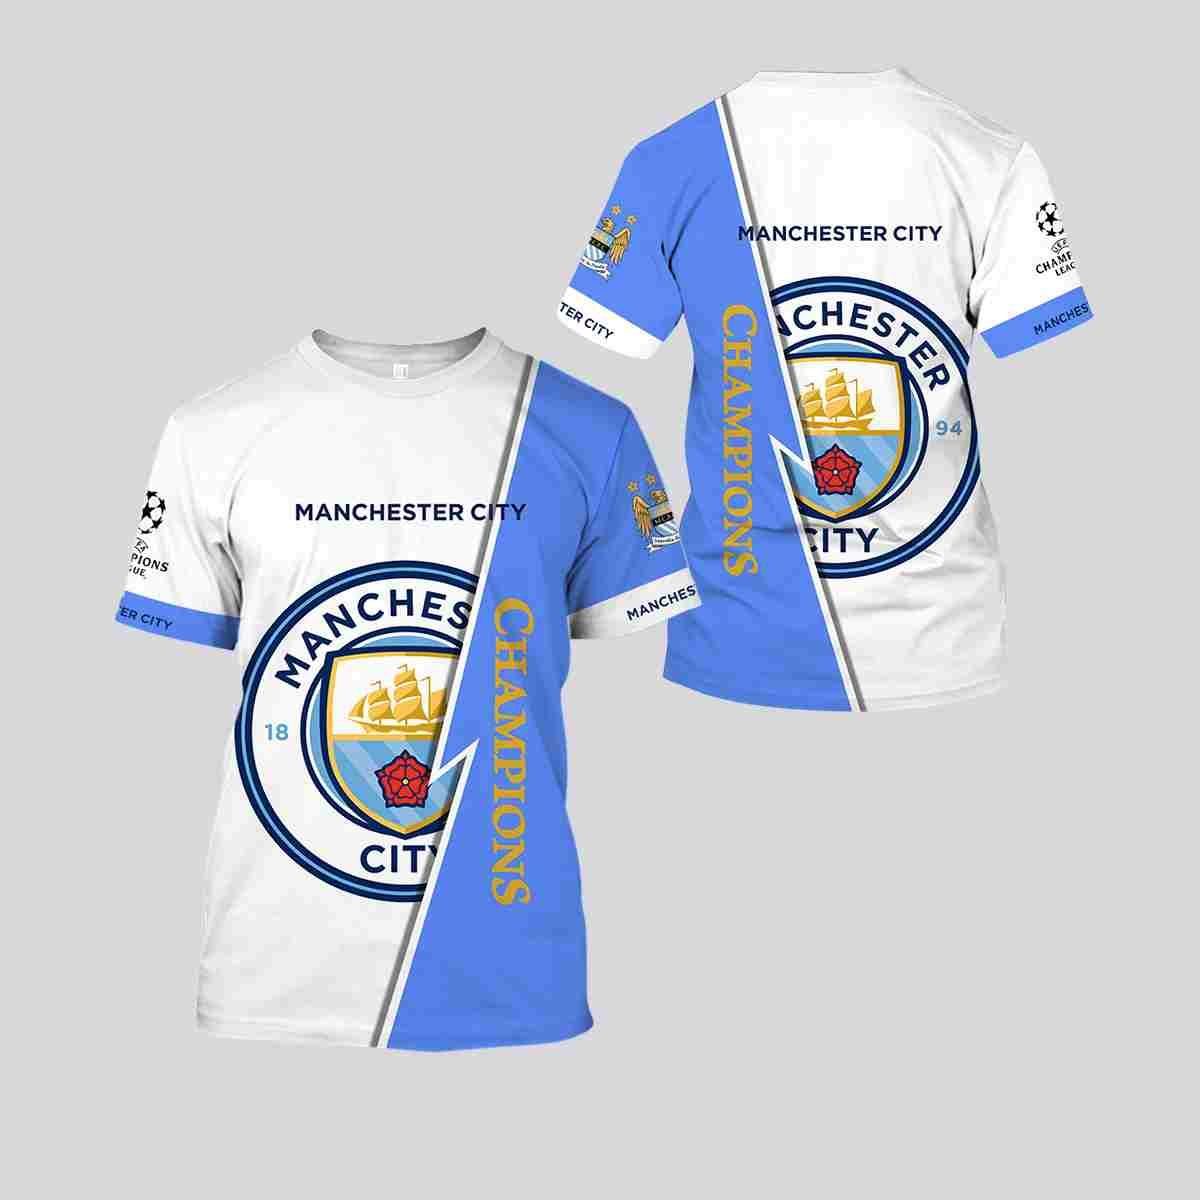 Check top t shirt Manchester City below 26